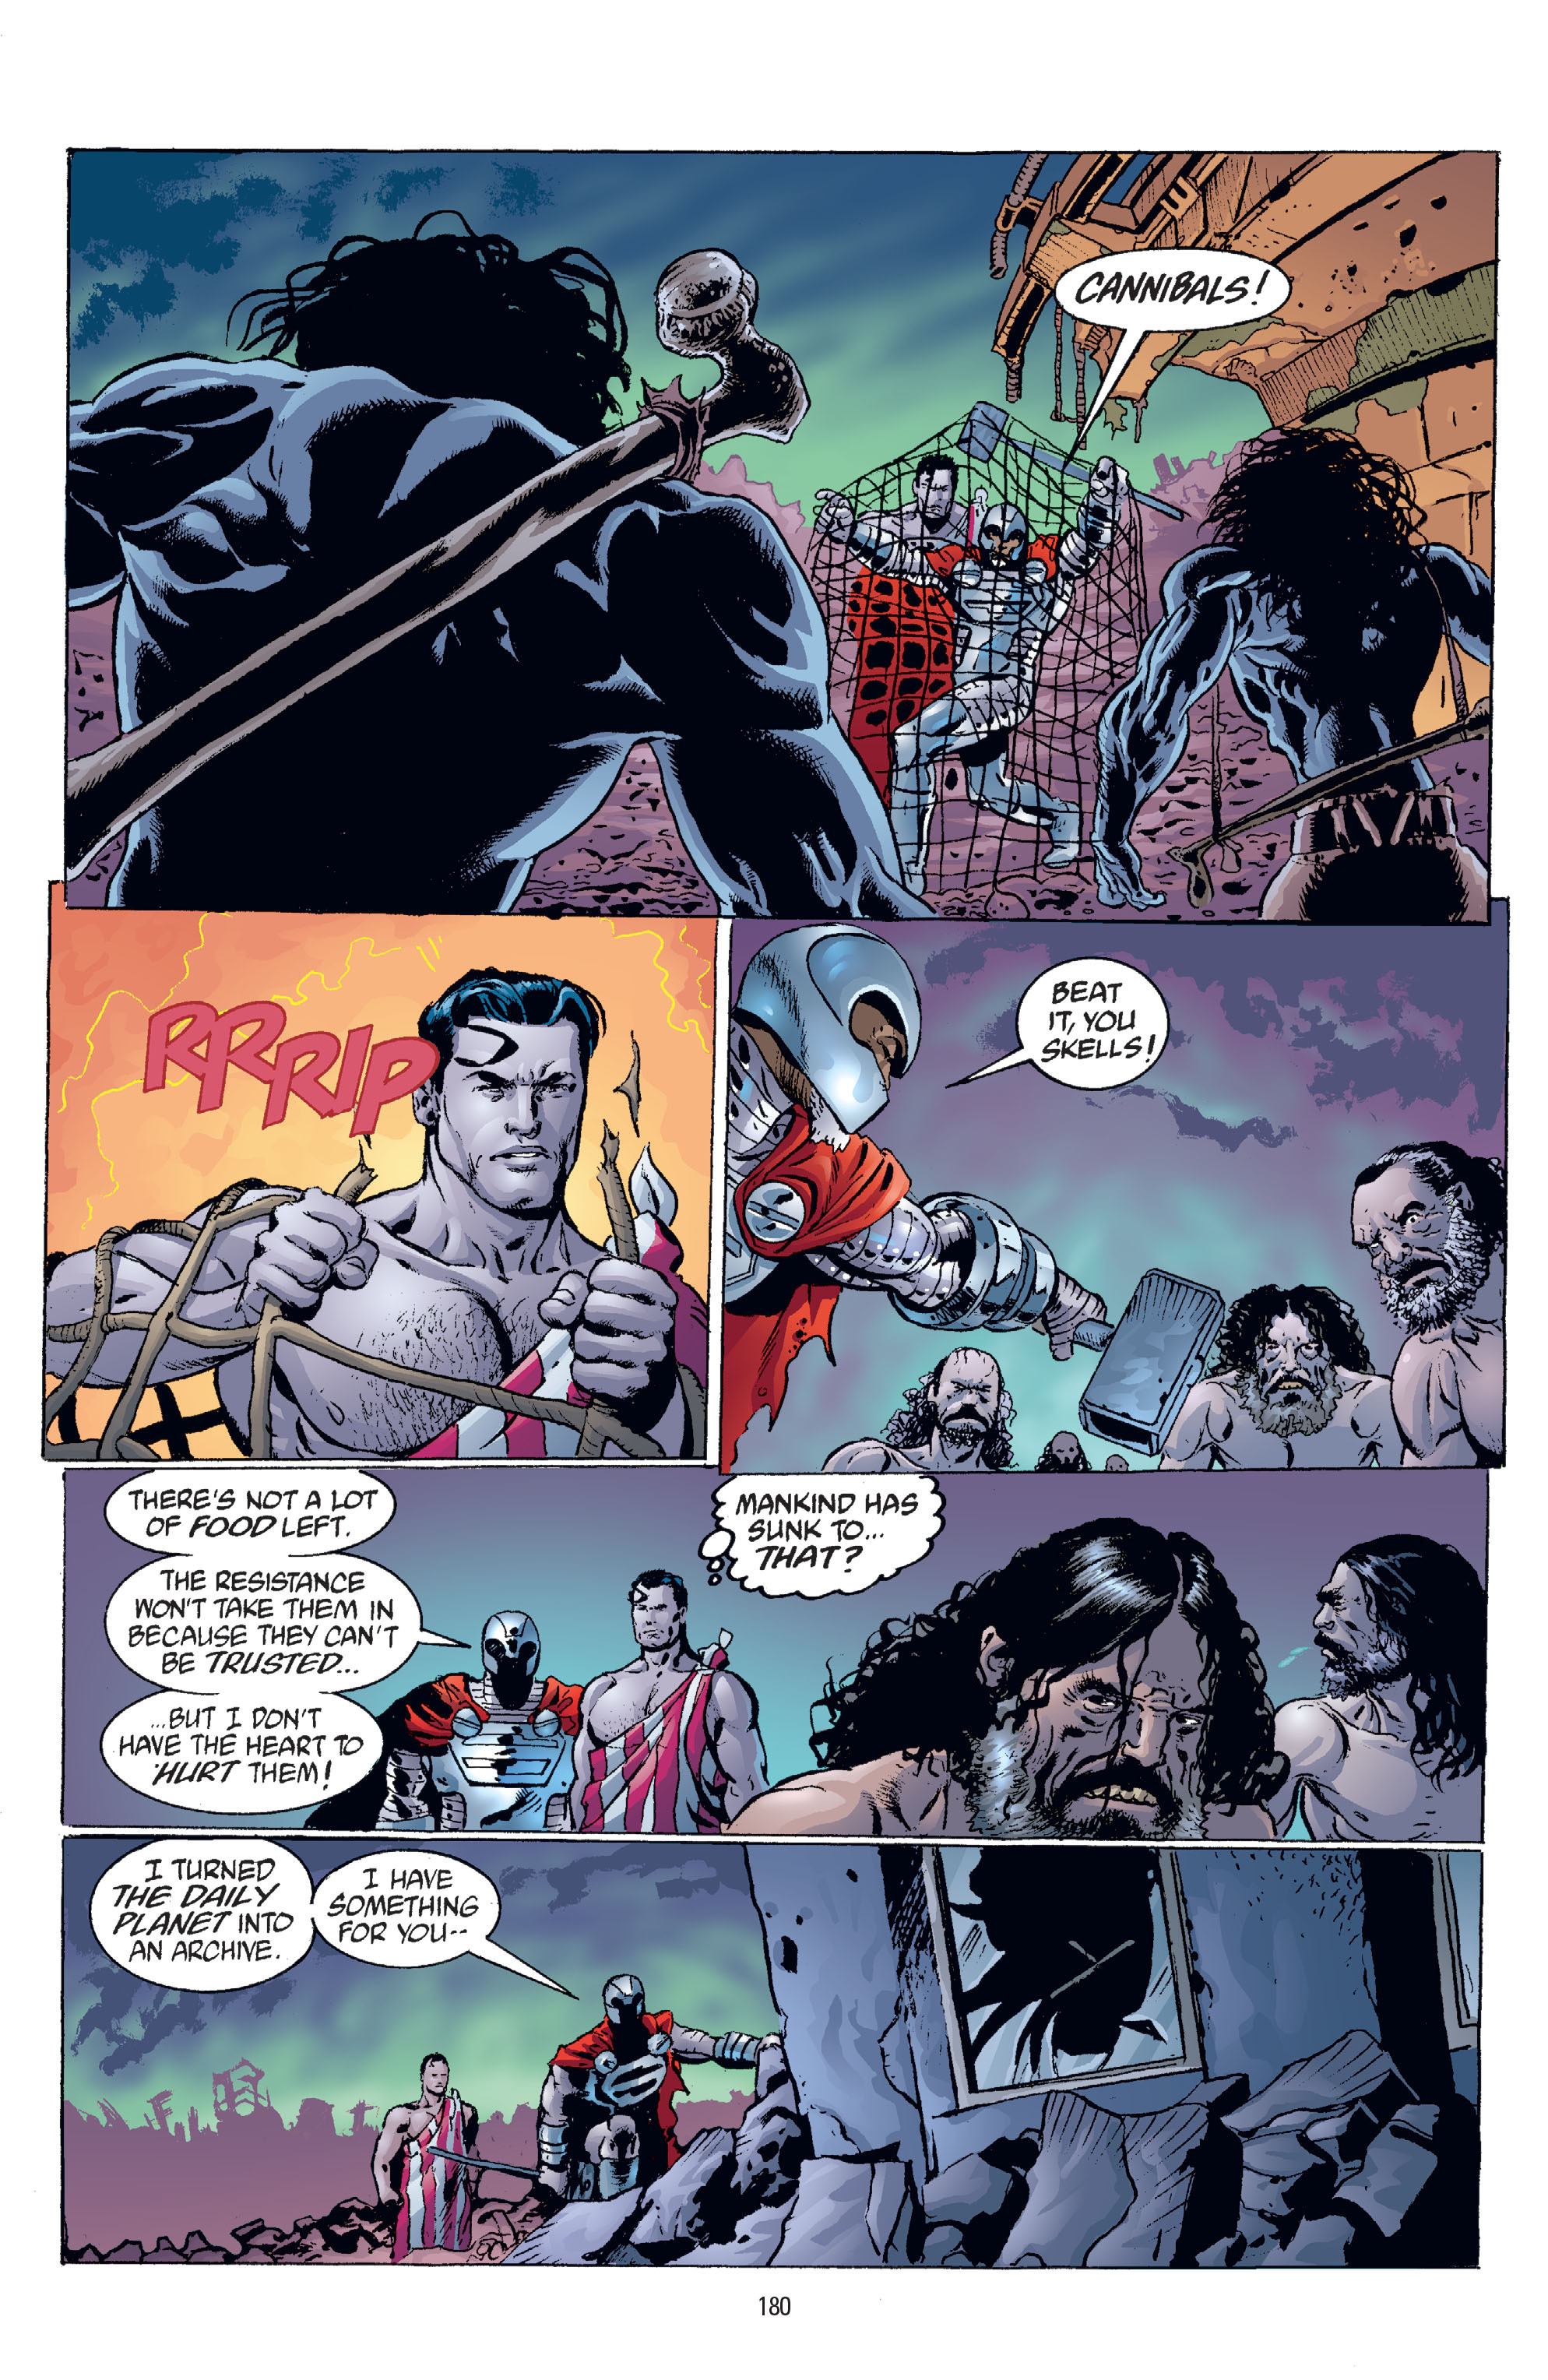 DC Comics/Dark Horse Comics: Justice League Full #1 - English 176